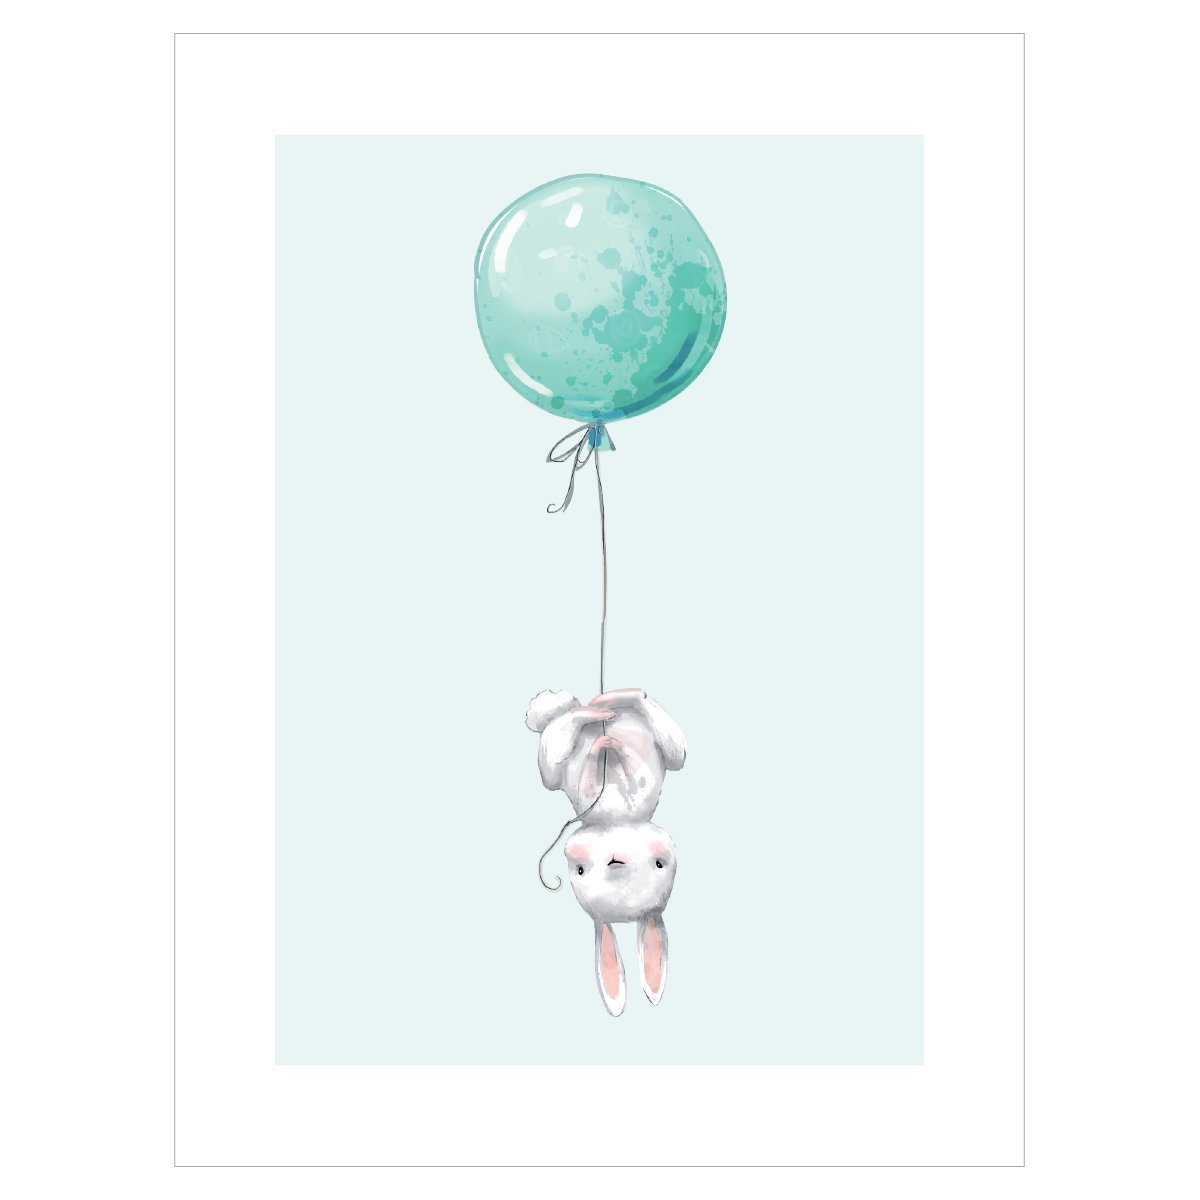 Plakat dla chłopca z króliczkiem i balonem#kolor_mietowy